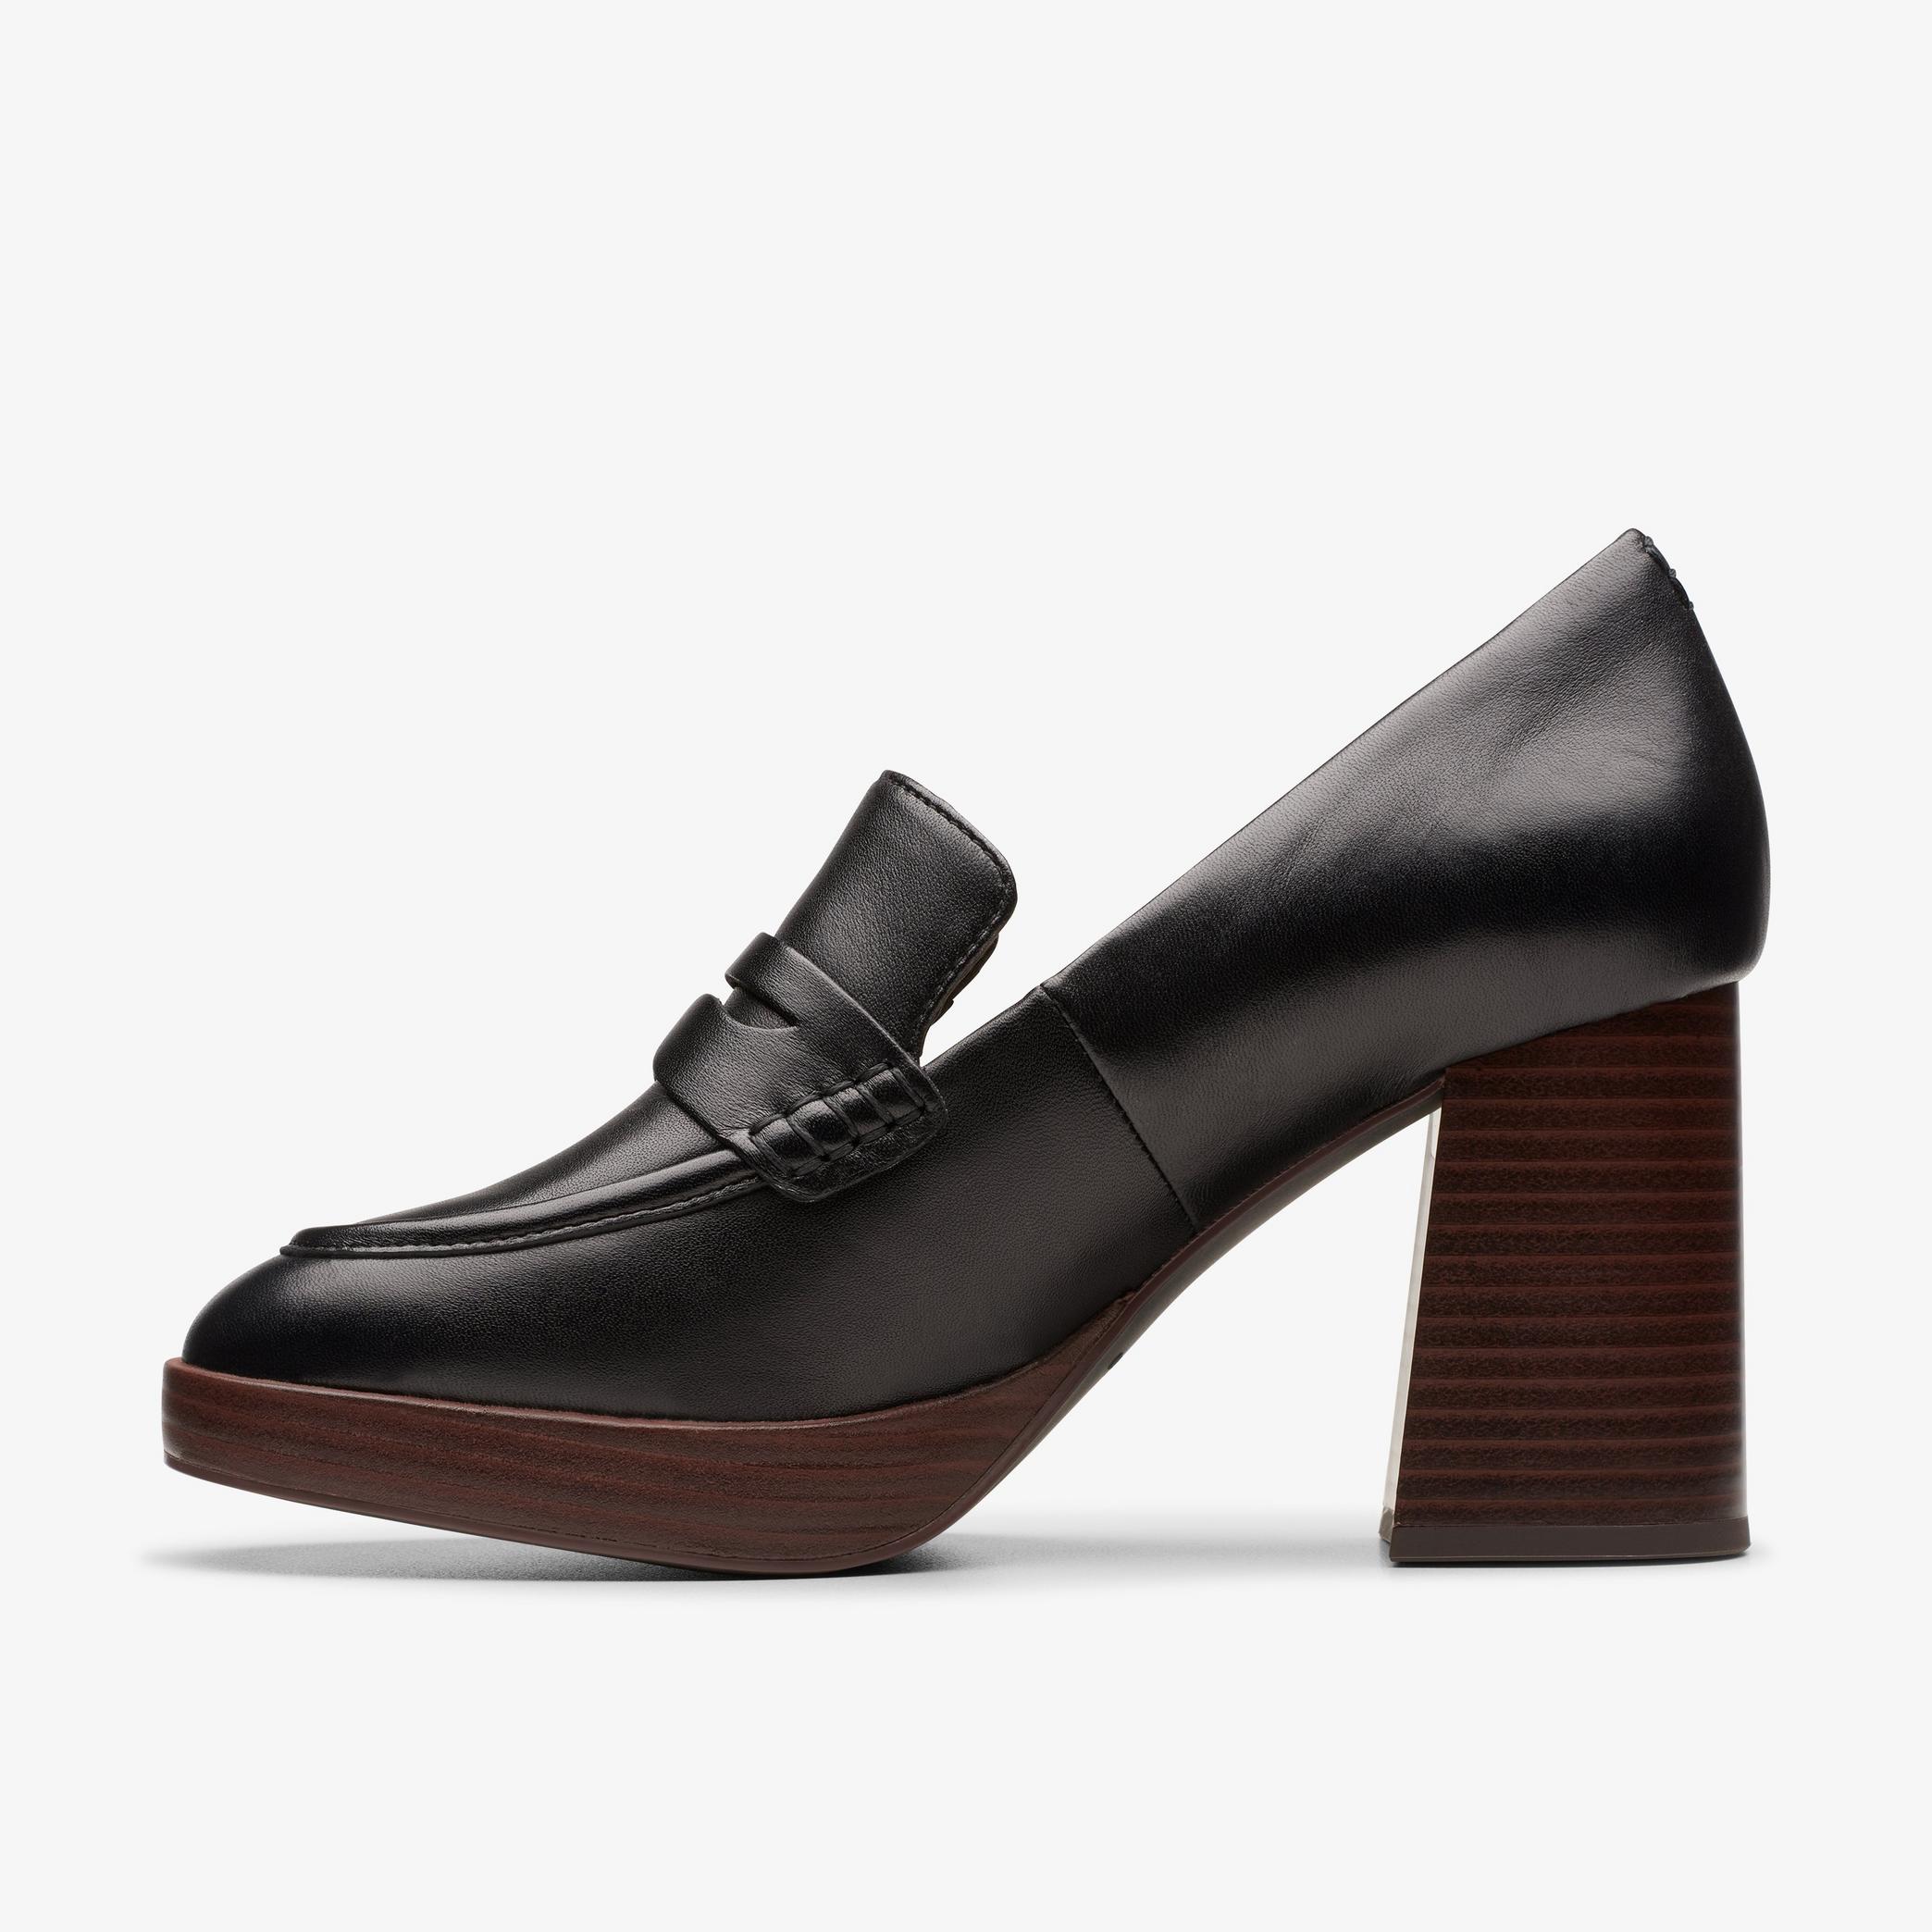 Chaussures à talons hauts en cuir noir Zoya85 Walk, vue 2 de 6